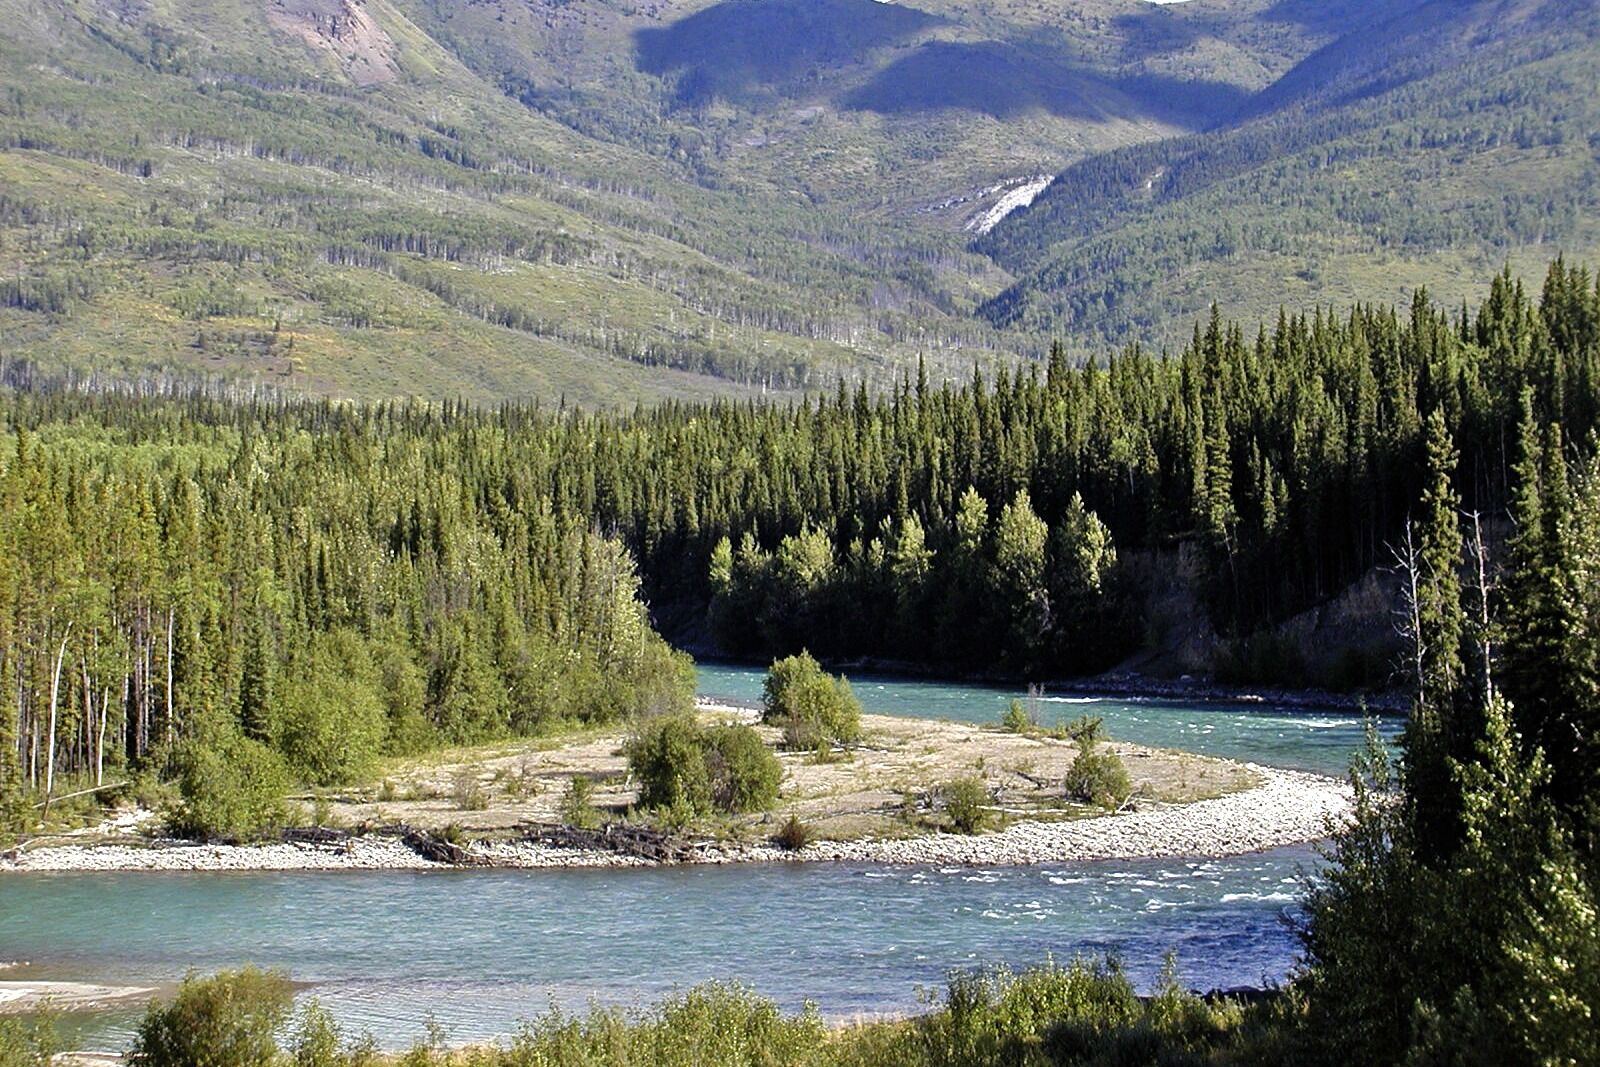 Olympus C2100UZ sample photo. Yukon territory, canada, landscape photography